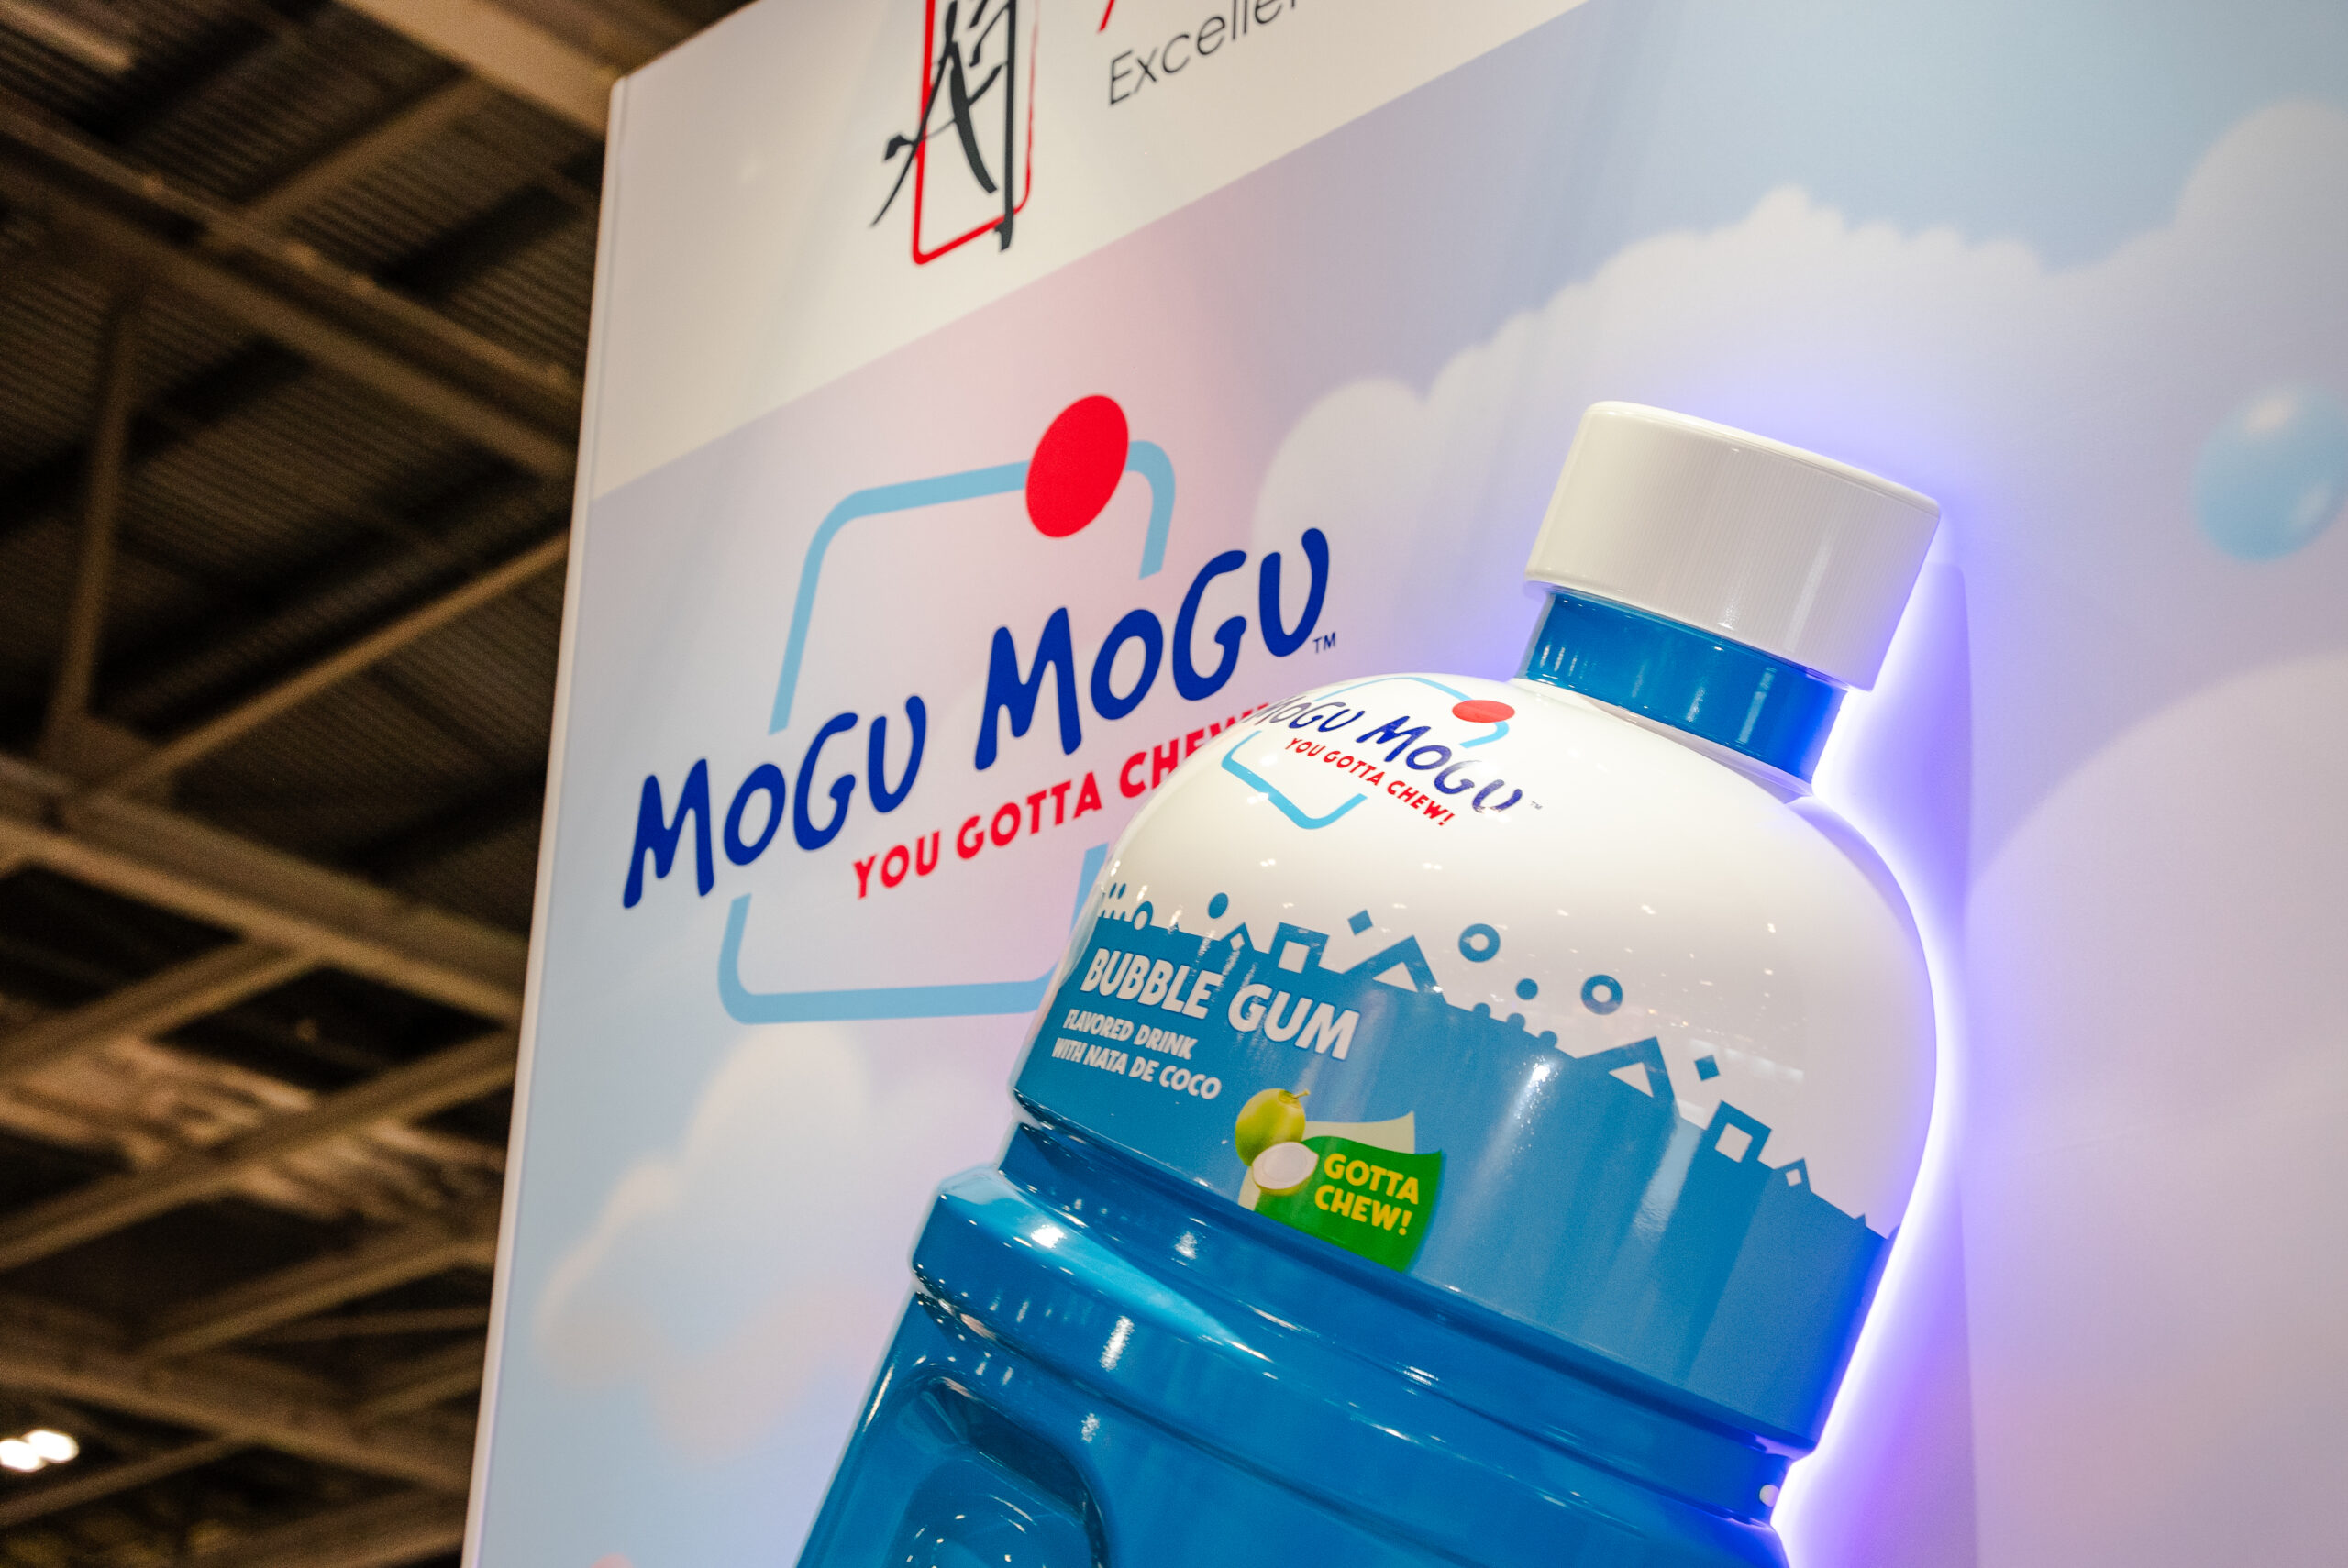 Mogu Mogu giant bottle from event